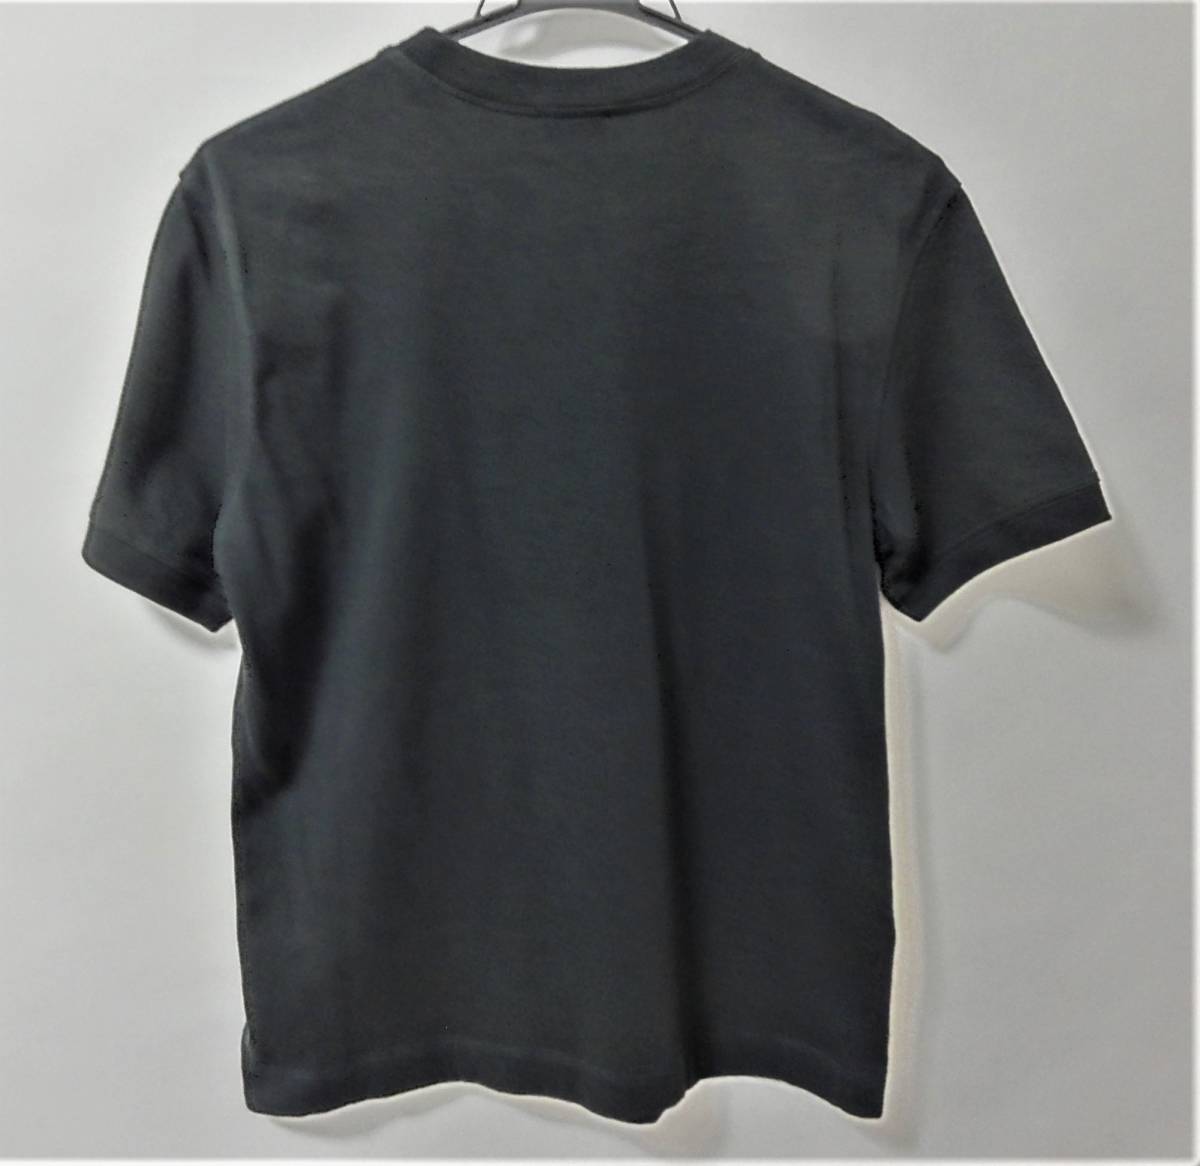  бесплатная доставка Armani -rete e-s футболка L размер BLACK